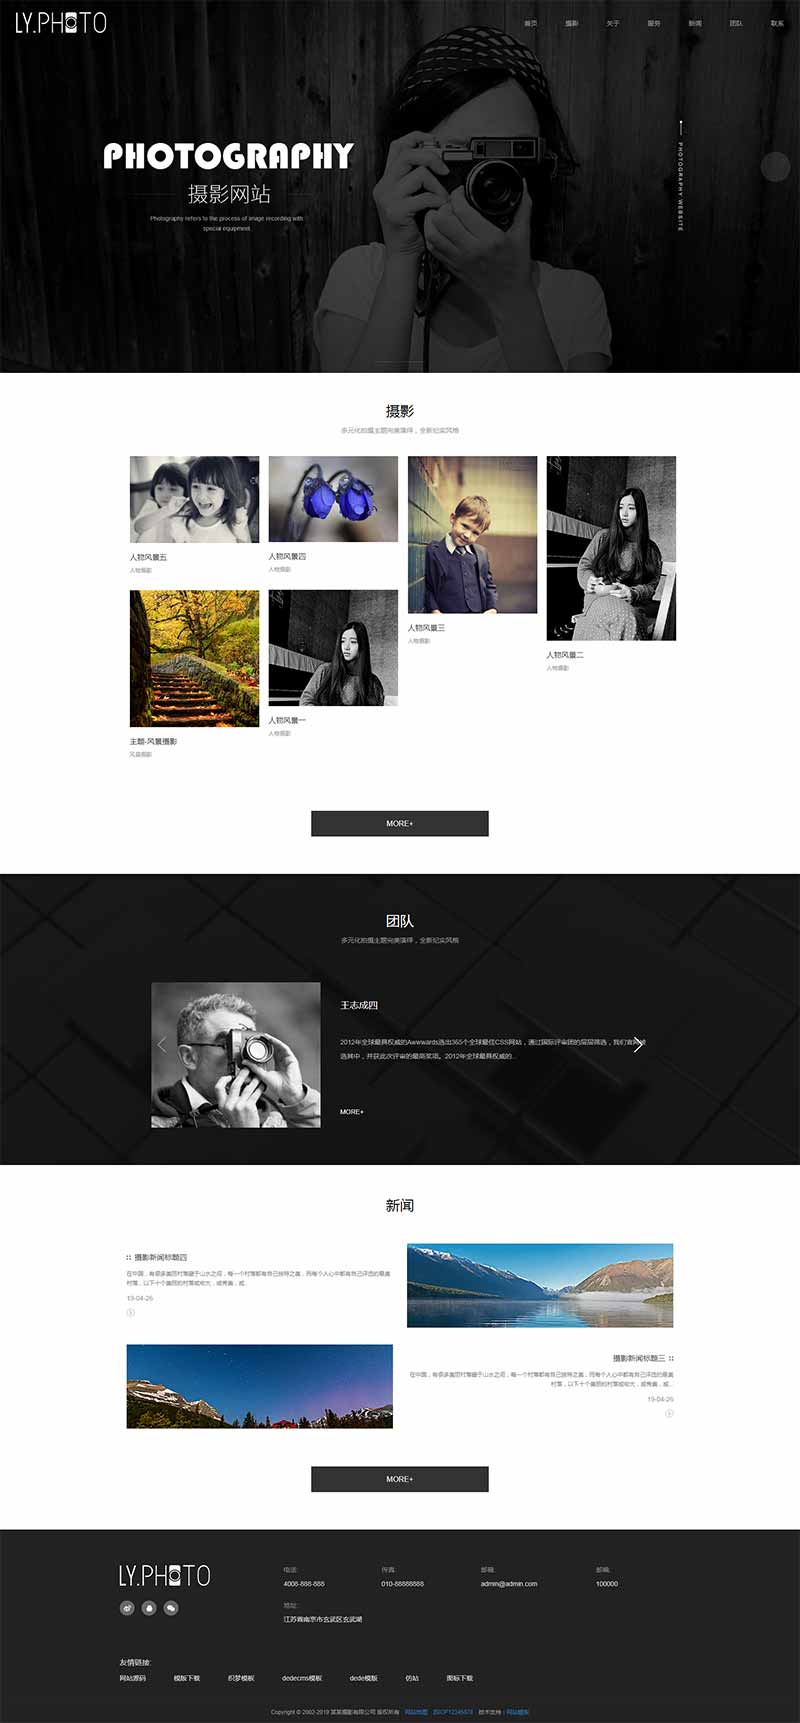 黑色风景摄影工作室个人写真拍照网站Wordpress模板效果图